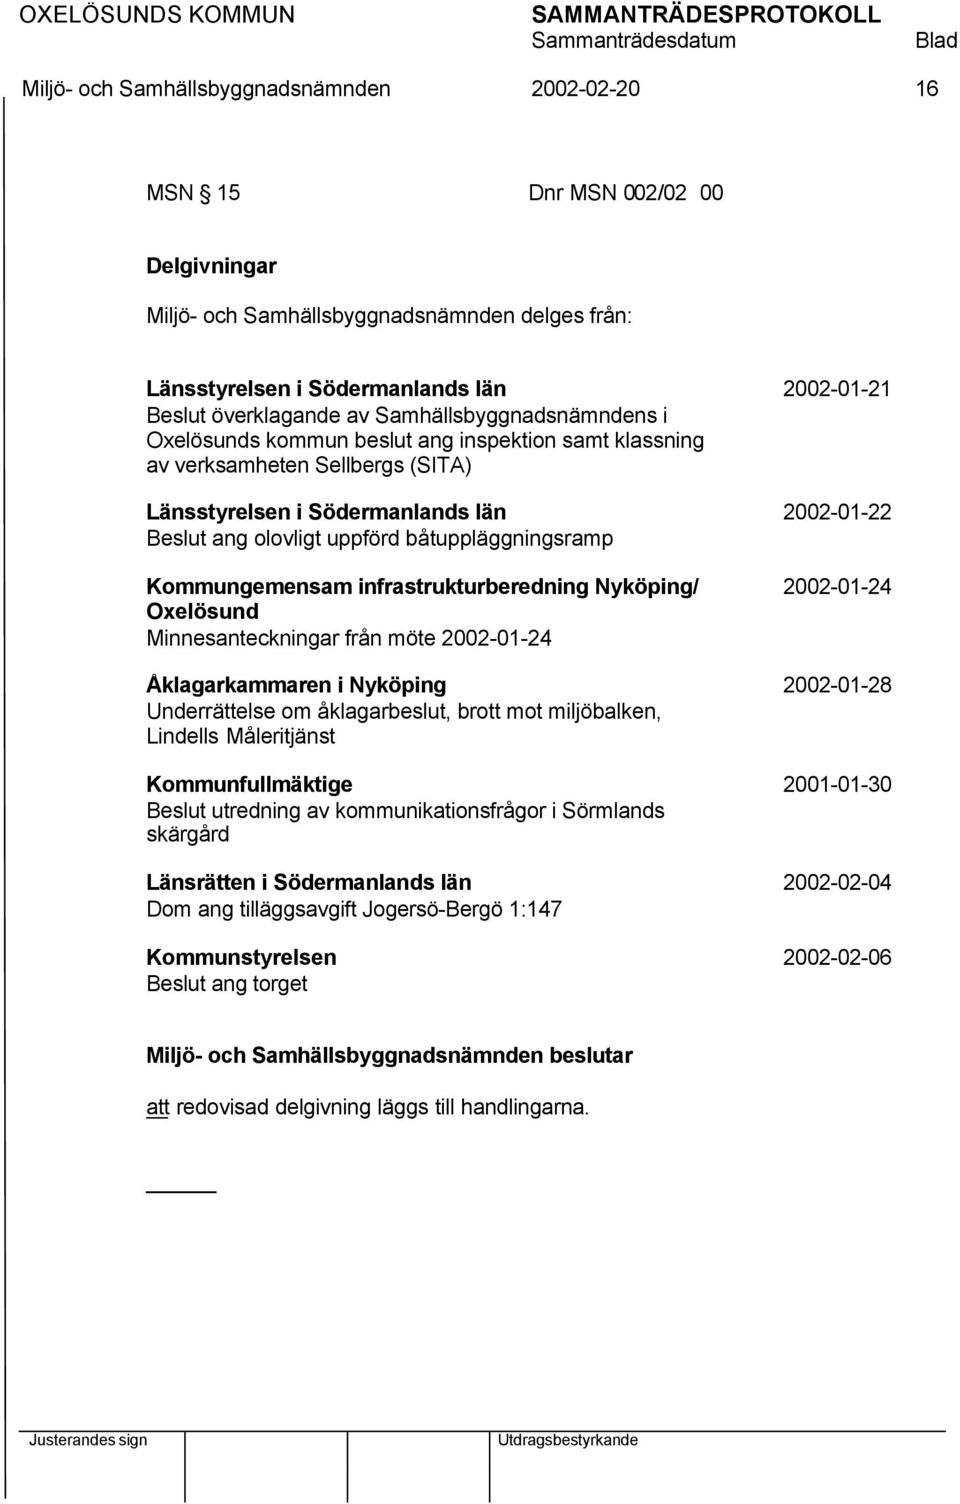 infrastrukturberedning Nyköping/ 2002-01-24 Oxelösund Minnesanteckningar från möte 2002-01-24 Åklagarkammaren i Nyköping 2002-01-28 Underrättelse om åklagarbeslut, brott mot miljöbalken, Lindells